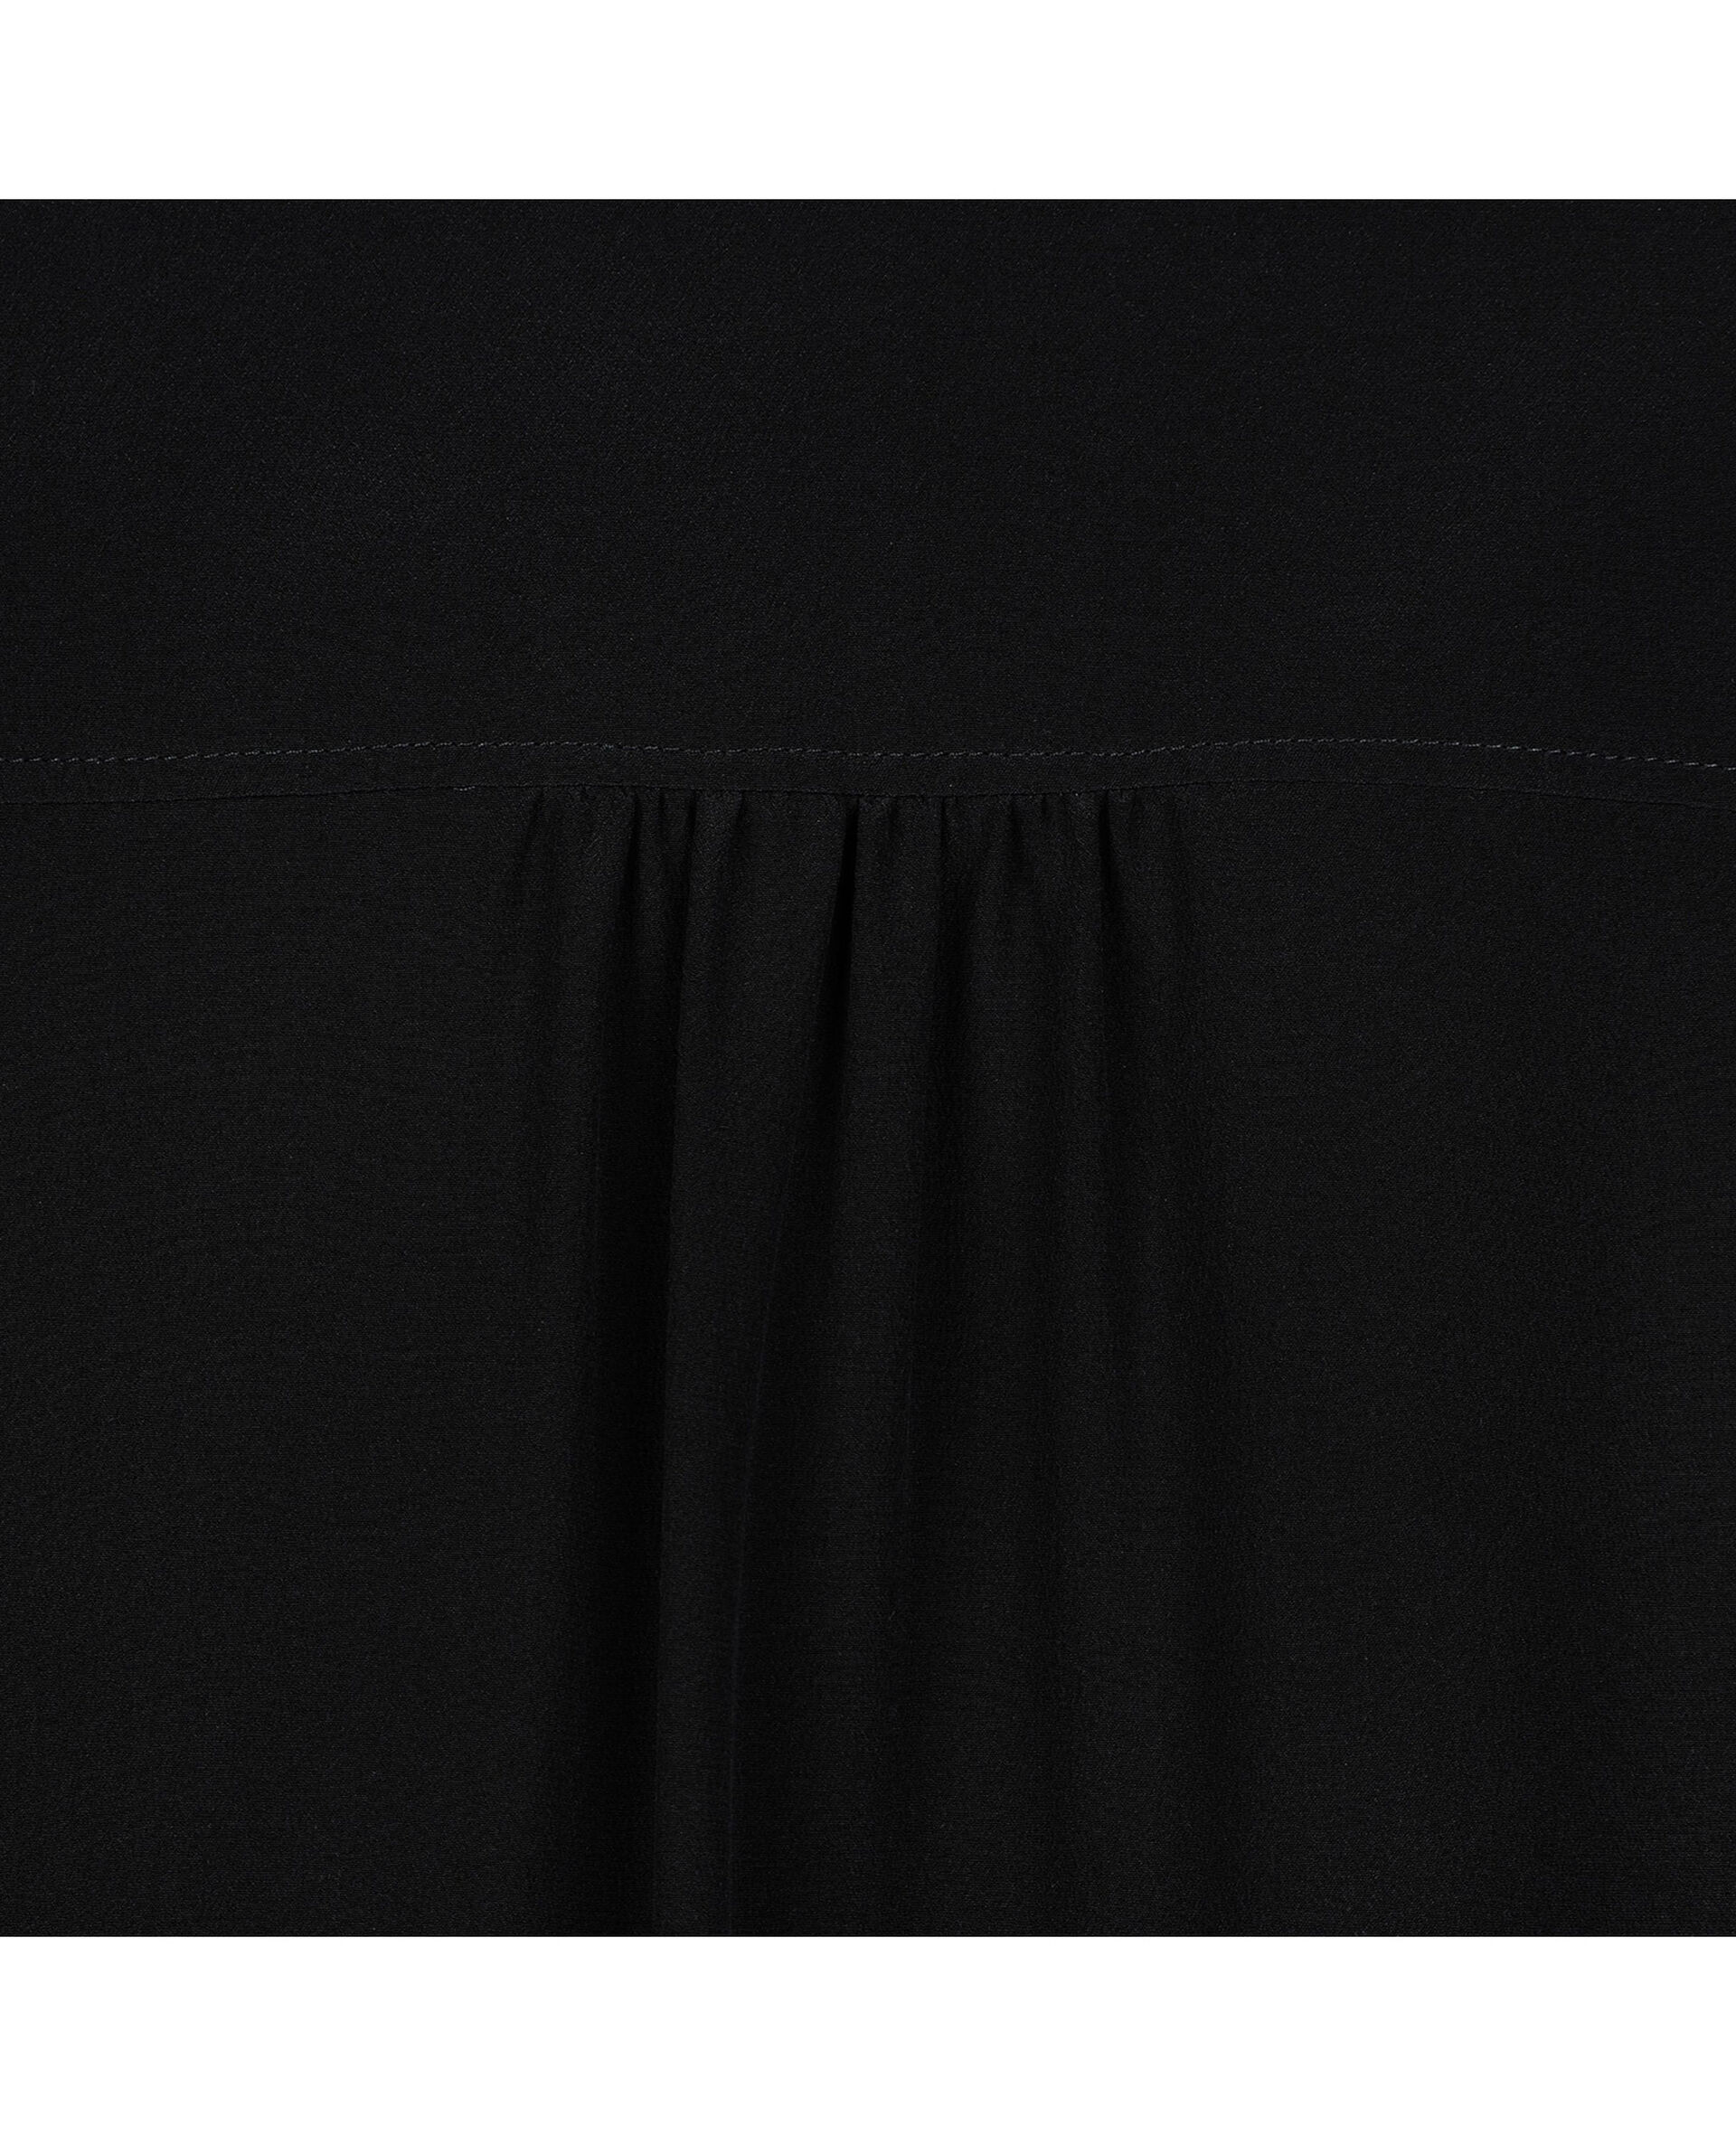 Estelle Shirt-Black-large image number 2